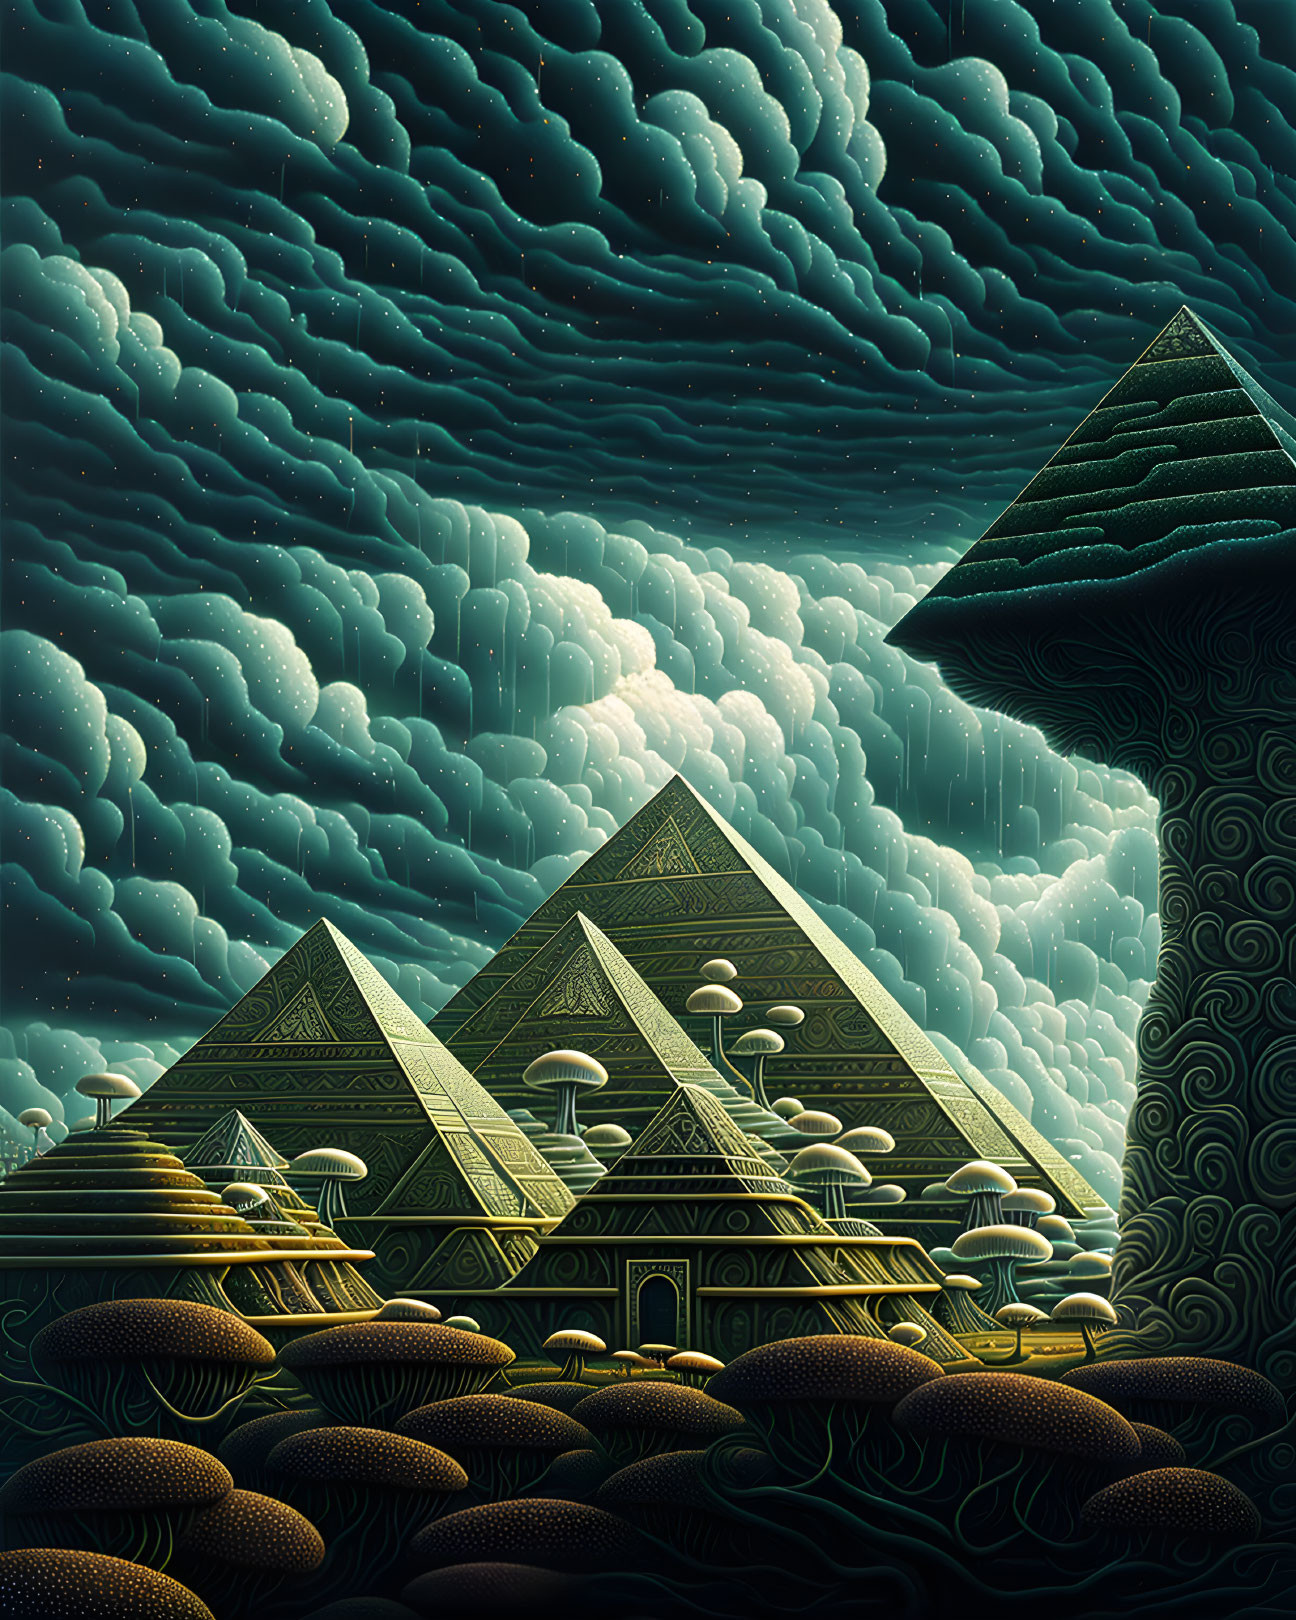 Surreal artwork: Pyramids, mushroom tree, and fungal landscape